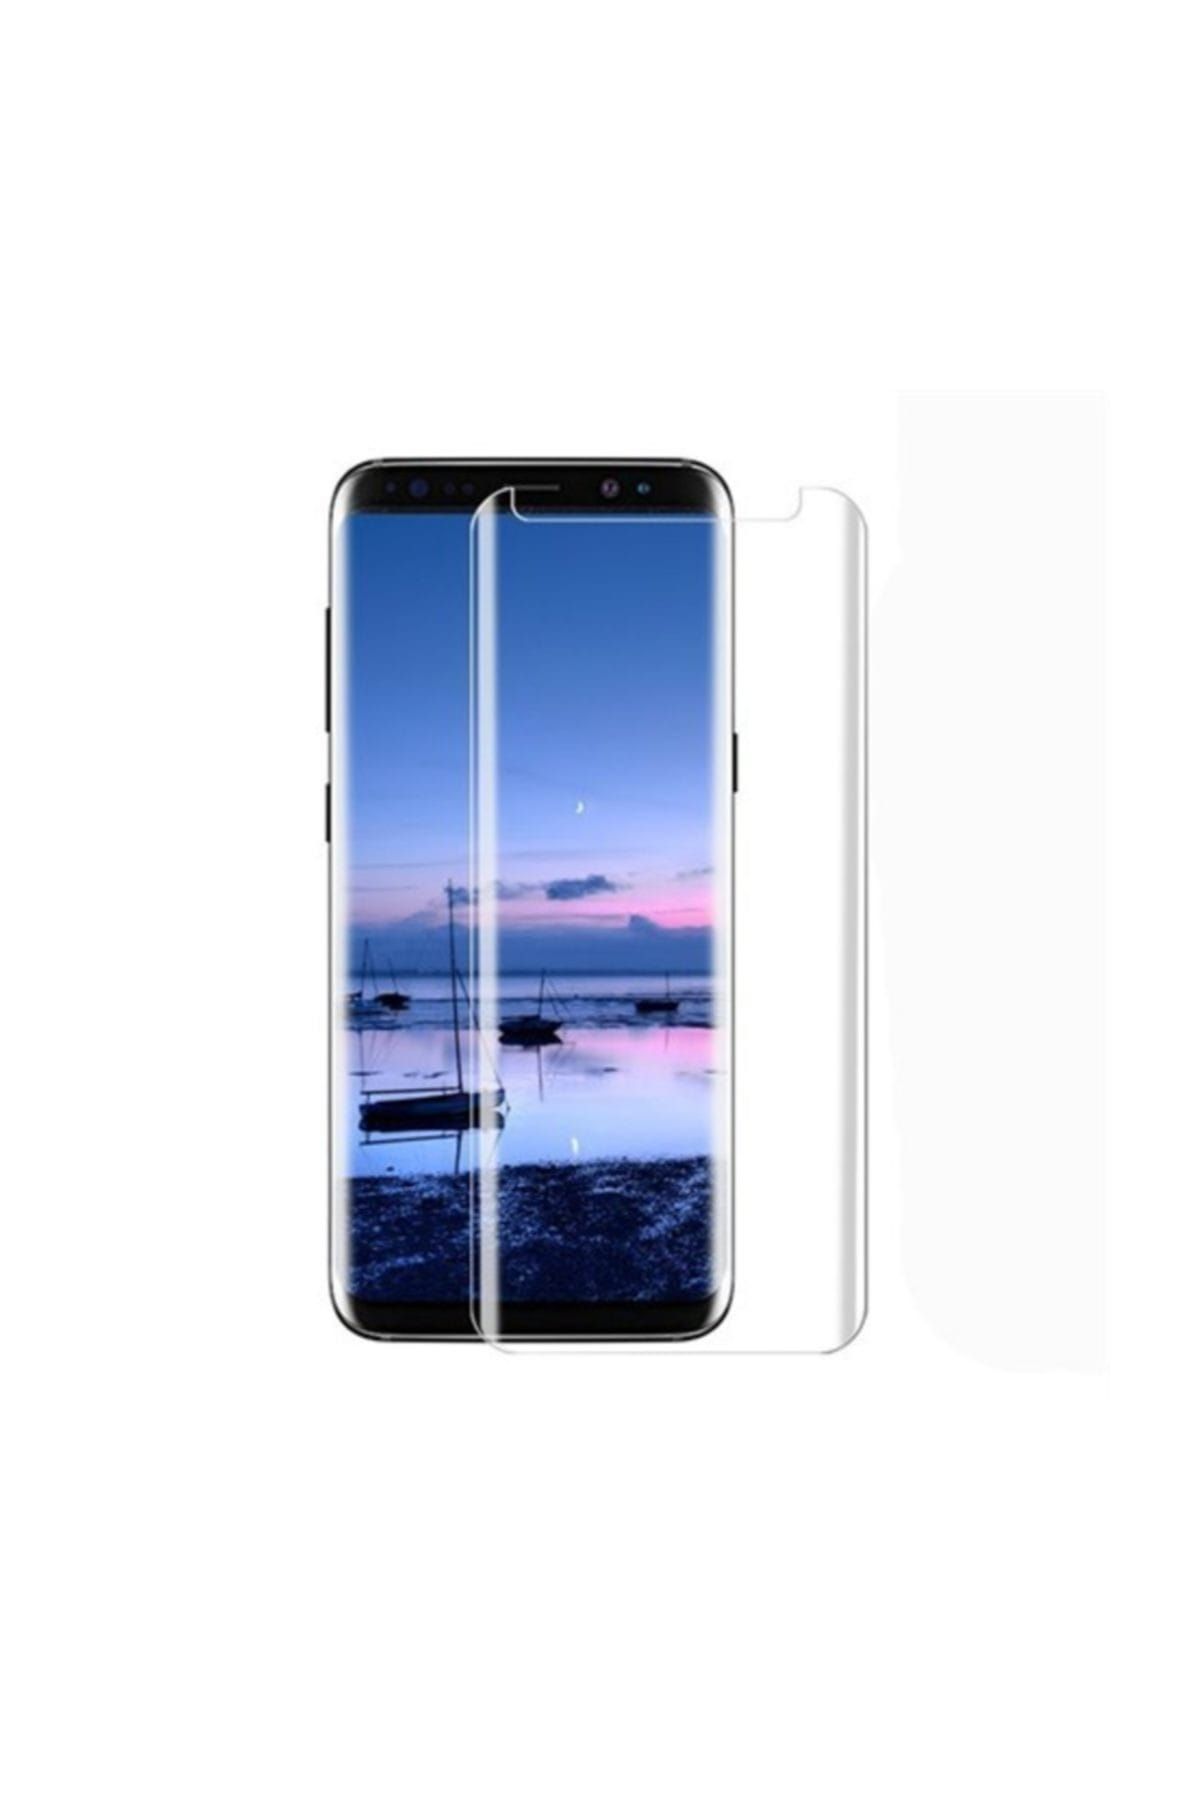 Sunix Samsung Galaxy S8 Plus Ultra İnce Nano Ekran Koruyucu